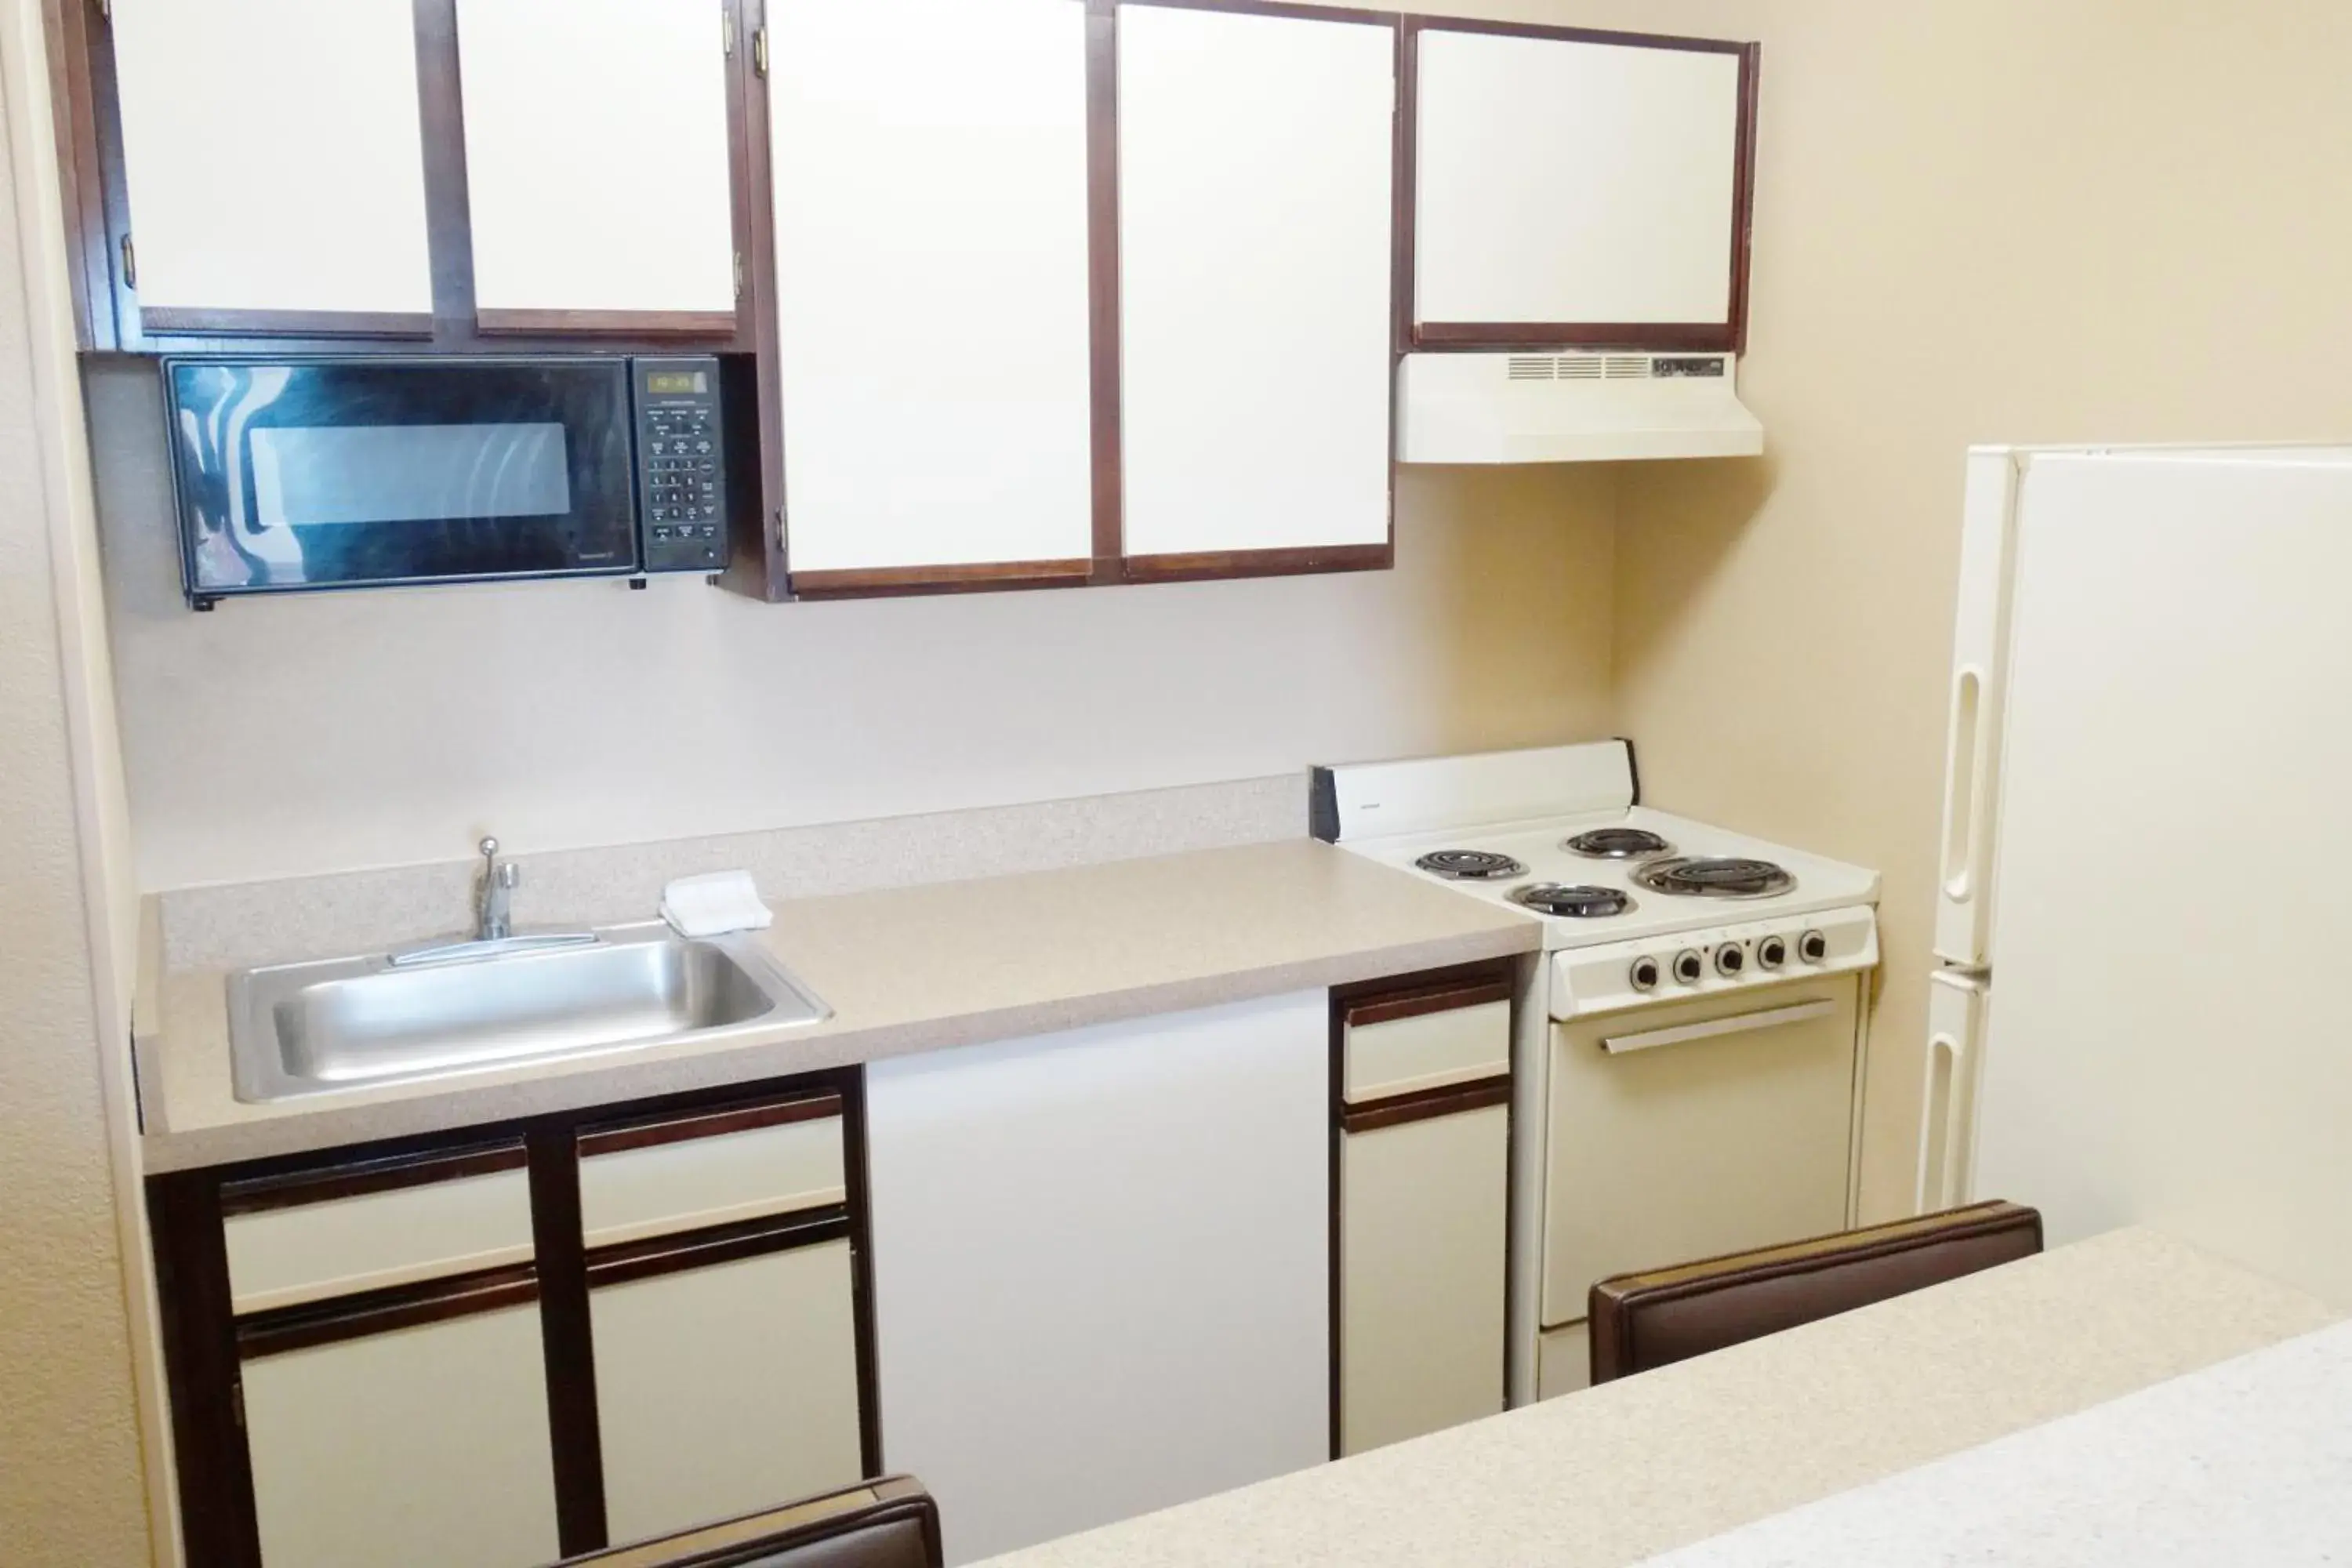 Kitchen or kitchenette, Kitchen/Kitchenette in MainStay Suites Little Rock West Near Medical Centers